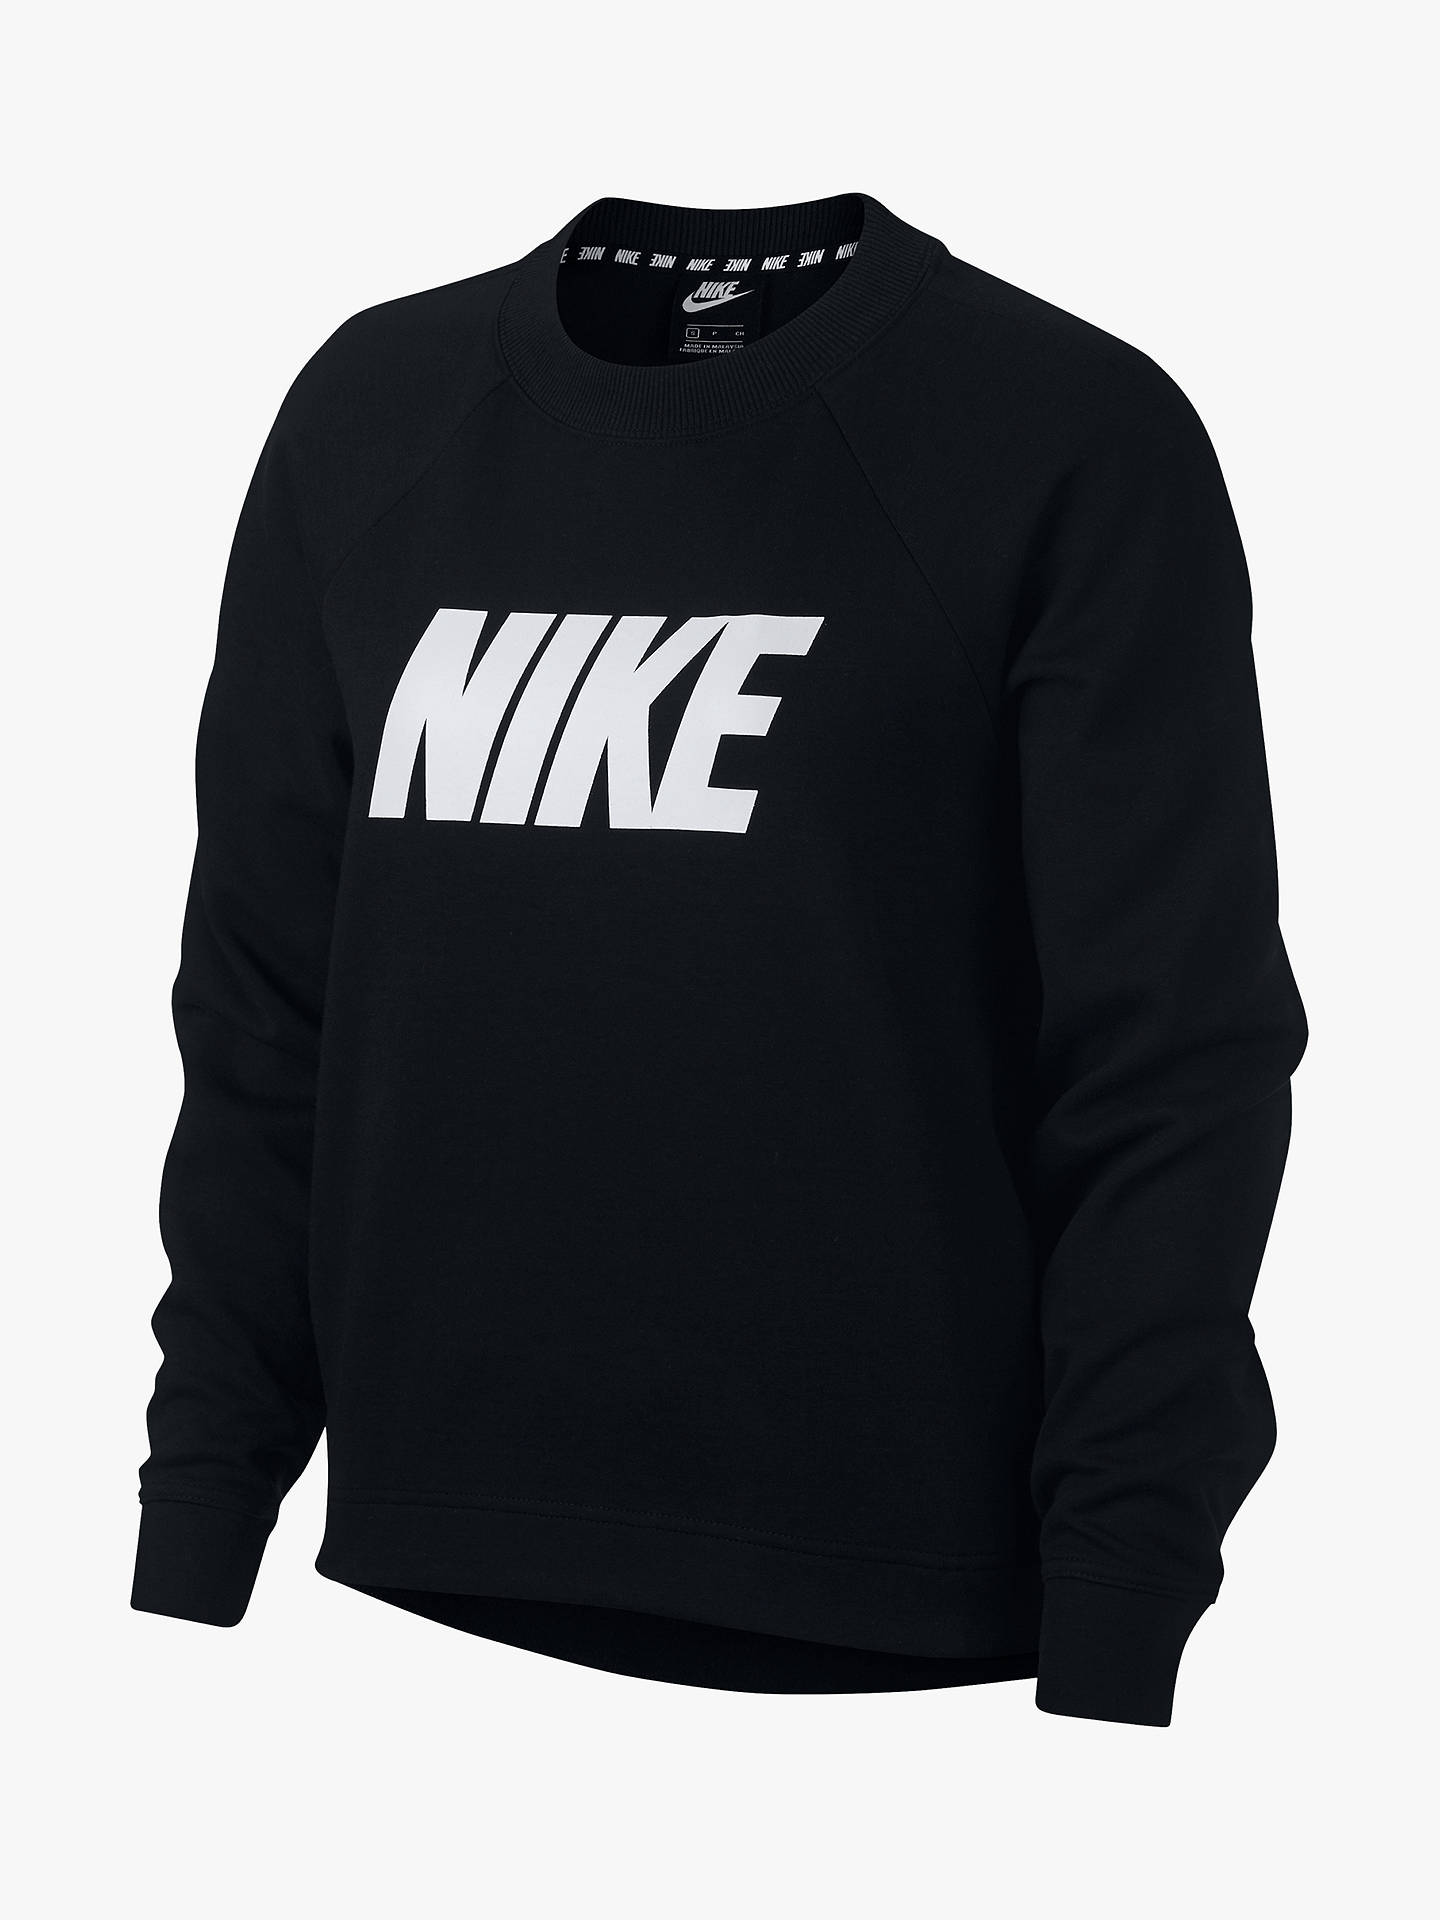 Nike Long Sleeve Logo Sweatshirt, Black/White at John Lewis & Partners